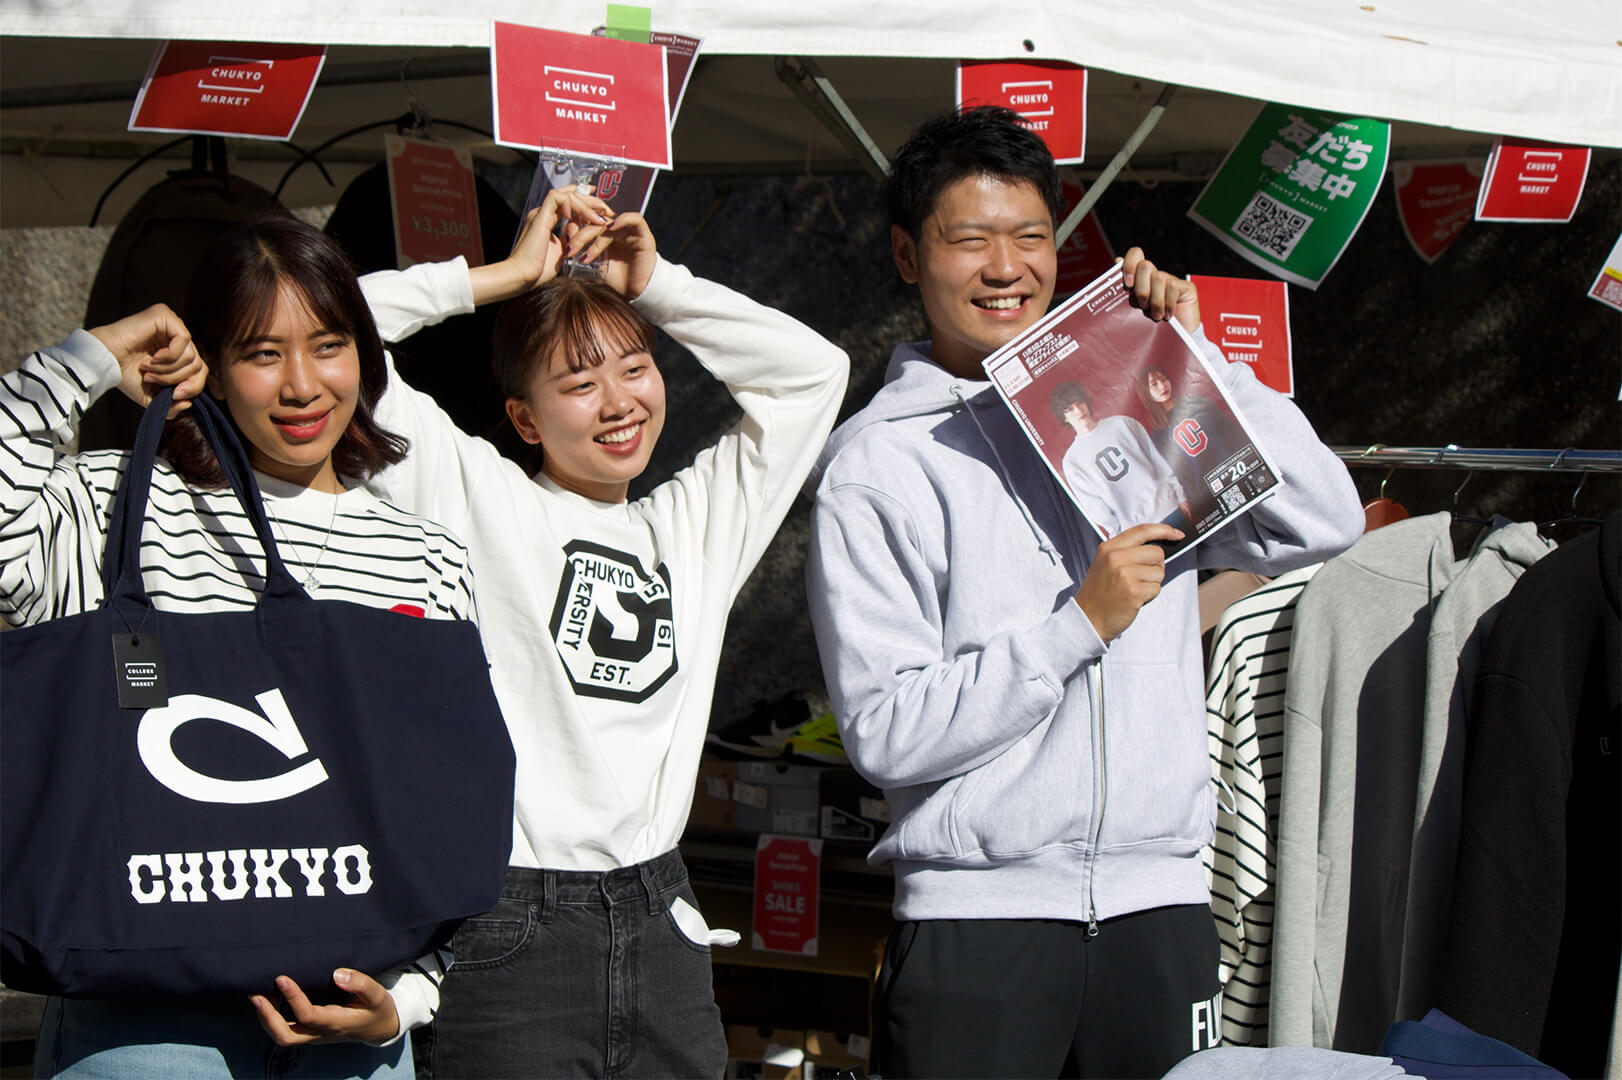 中京大学とよた祭にて「CHUKYO MARKET ポップアップストア」を開催